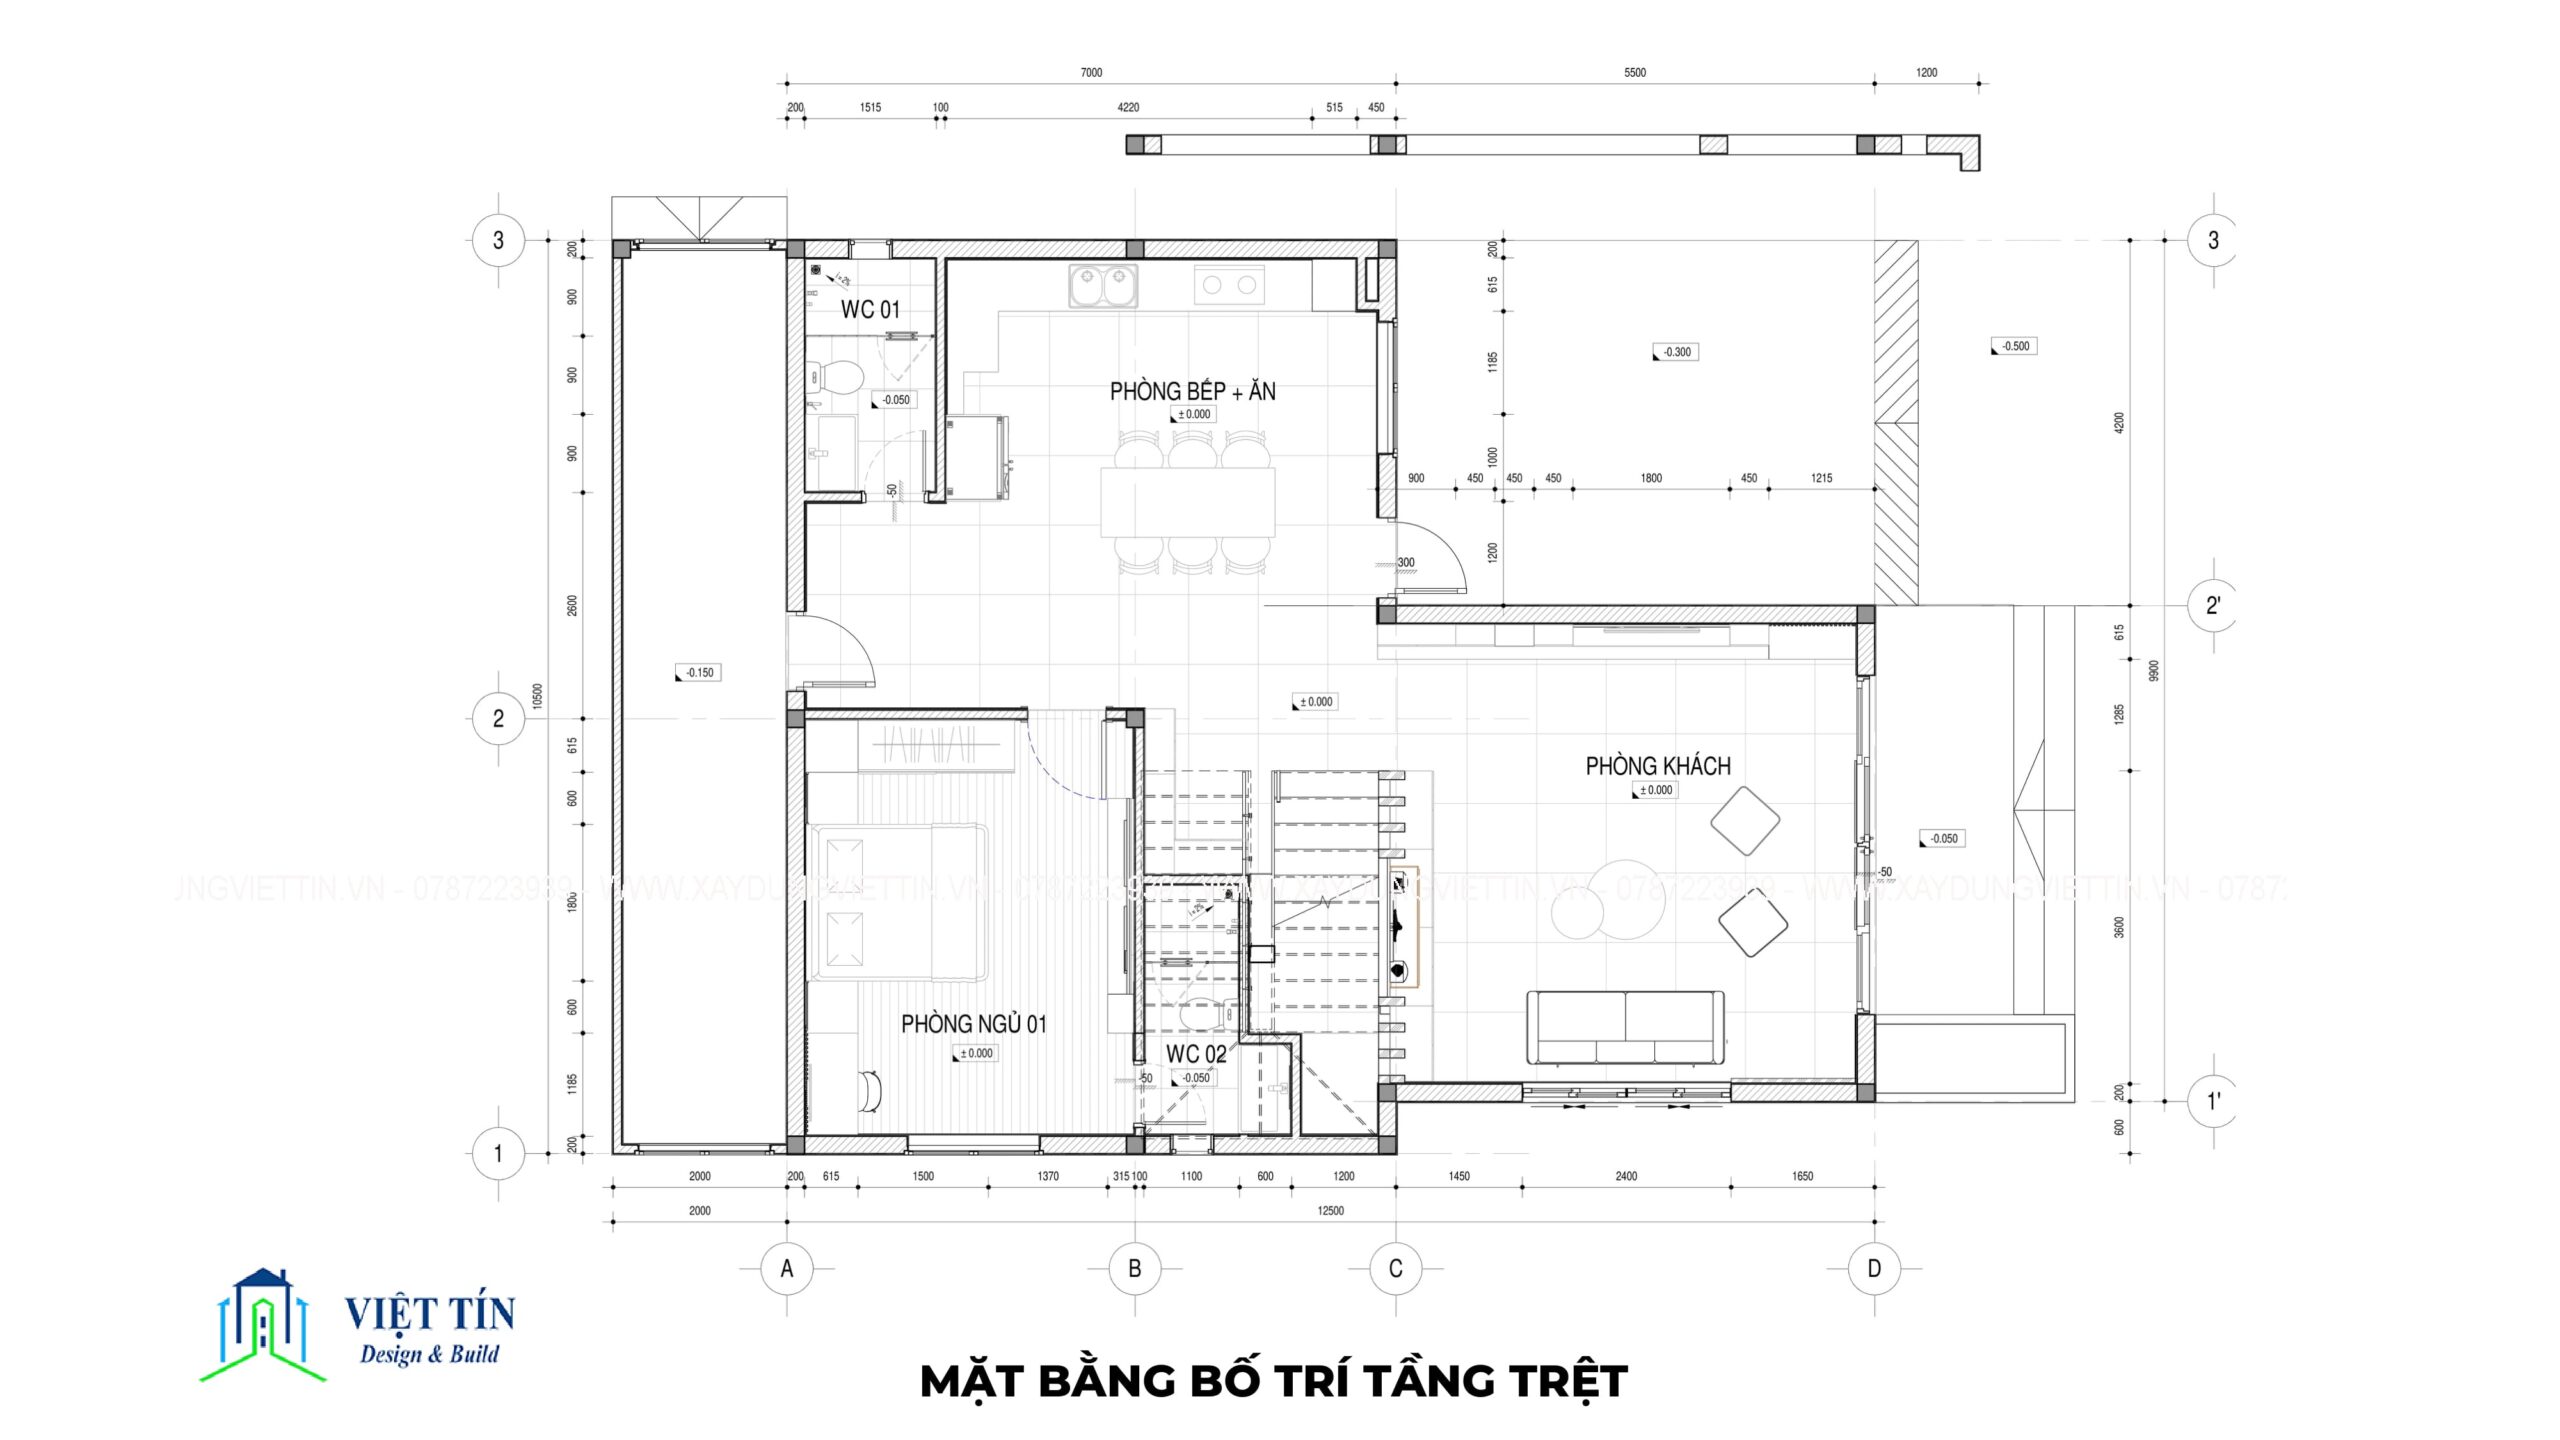 Cùng xem biệt thự hiện đại 2 tầng 1 tum 2 mặt tiền tại Vũng Tàu - VIET TIN CONSTRUCTION